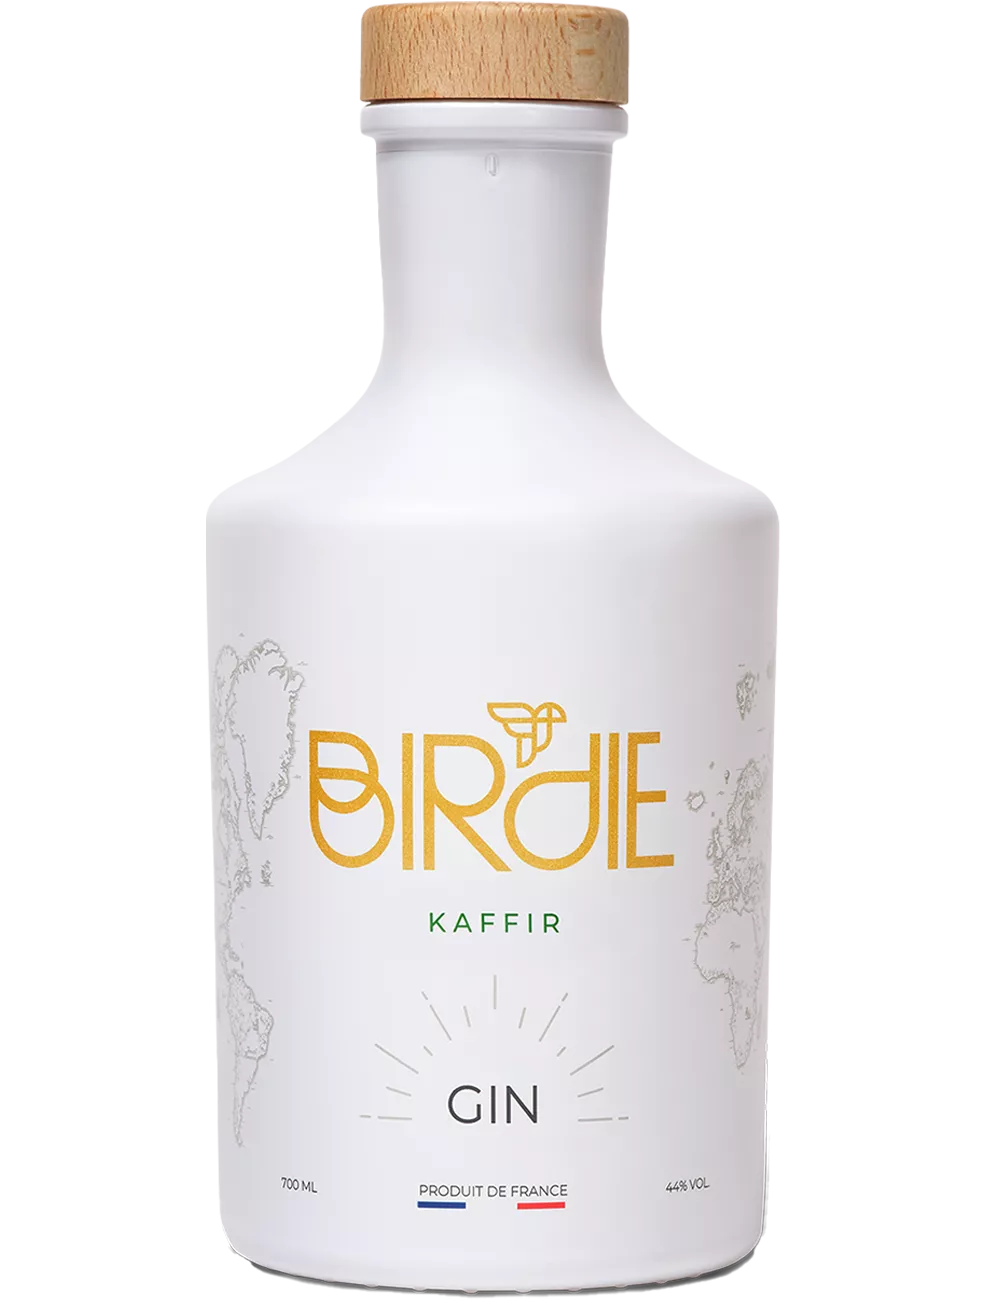 Birdie - Kaffir - Gin